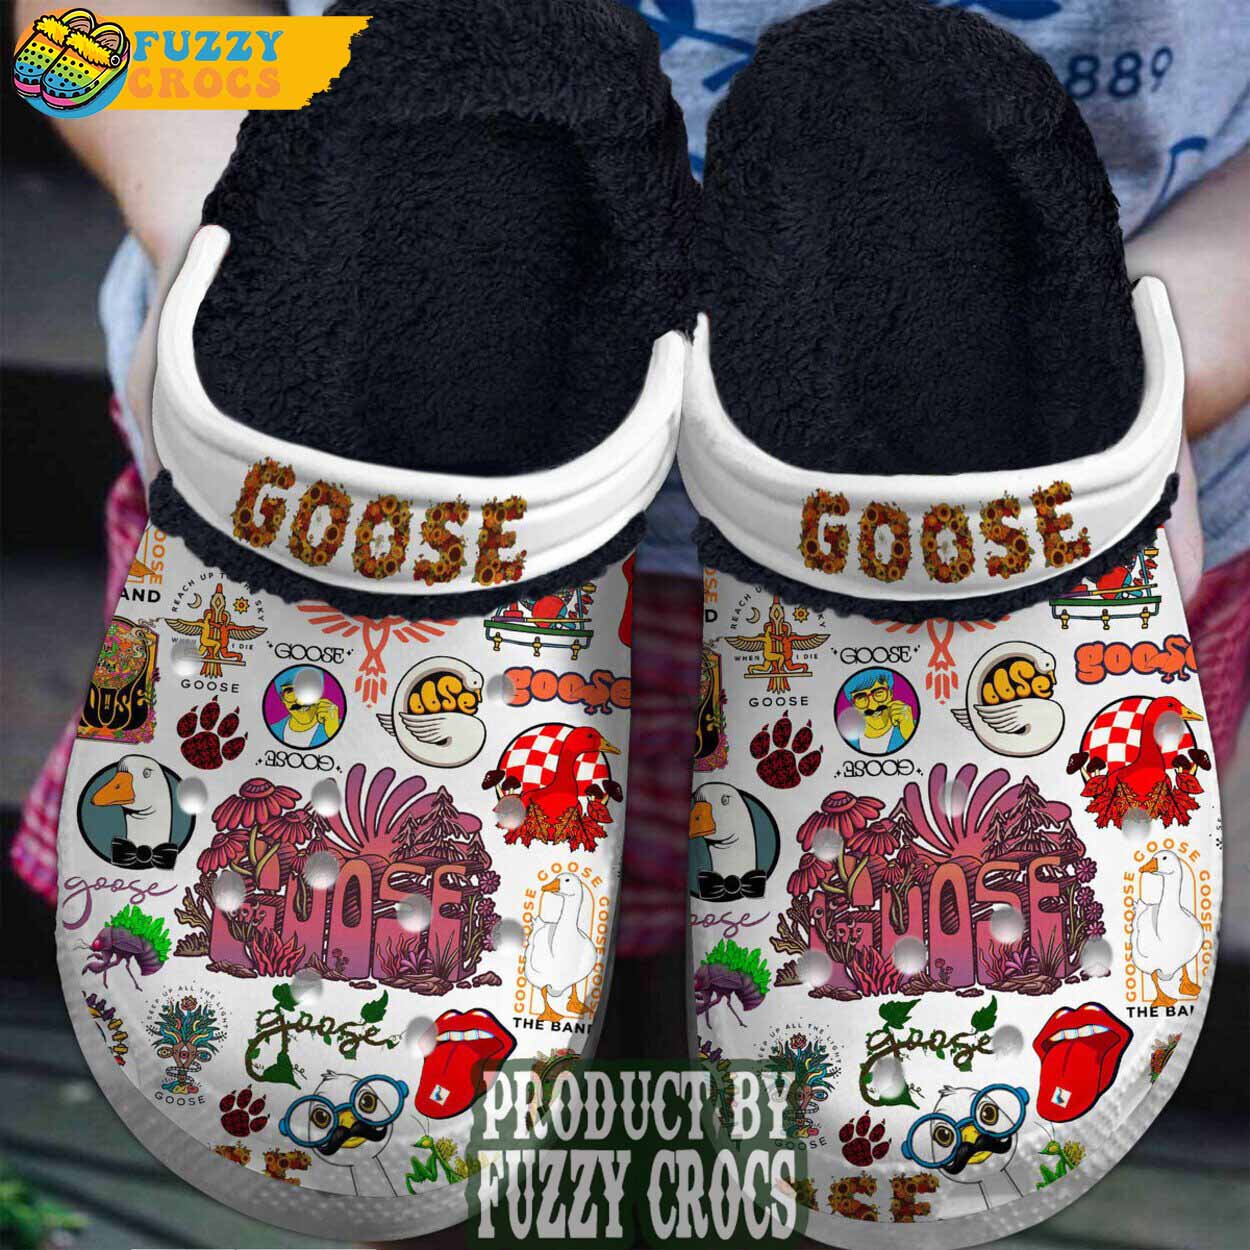 FuzzyCrocs Goose White Crocs With Fur